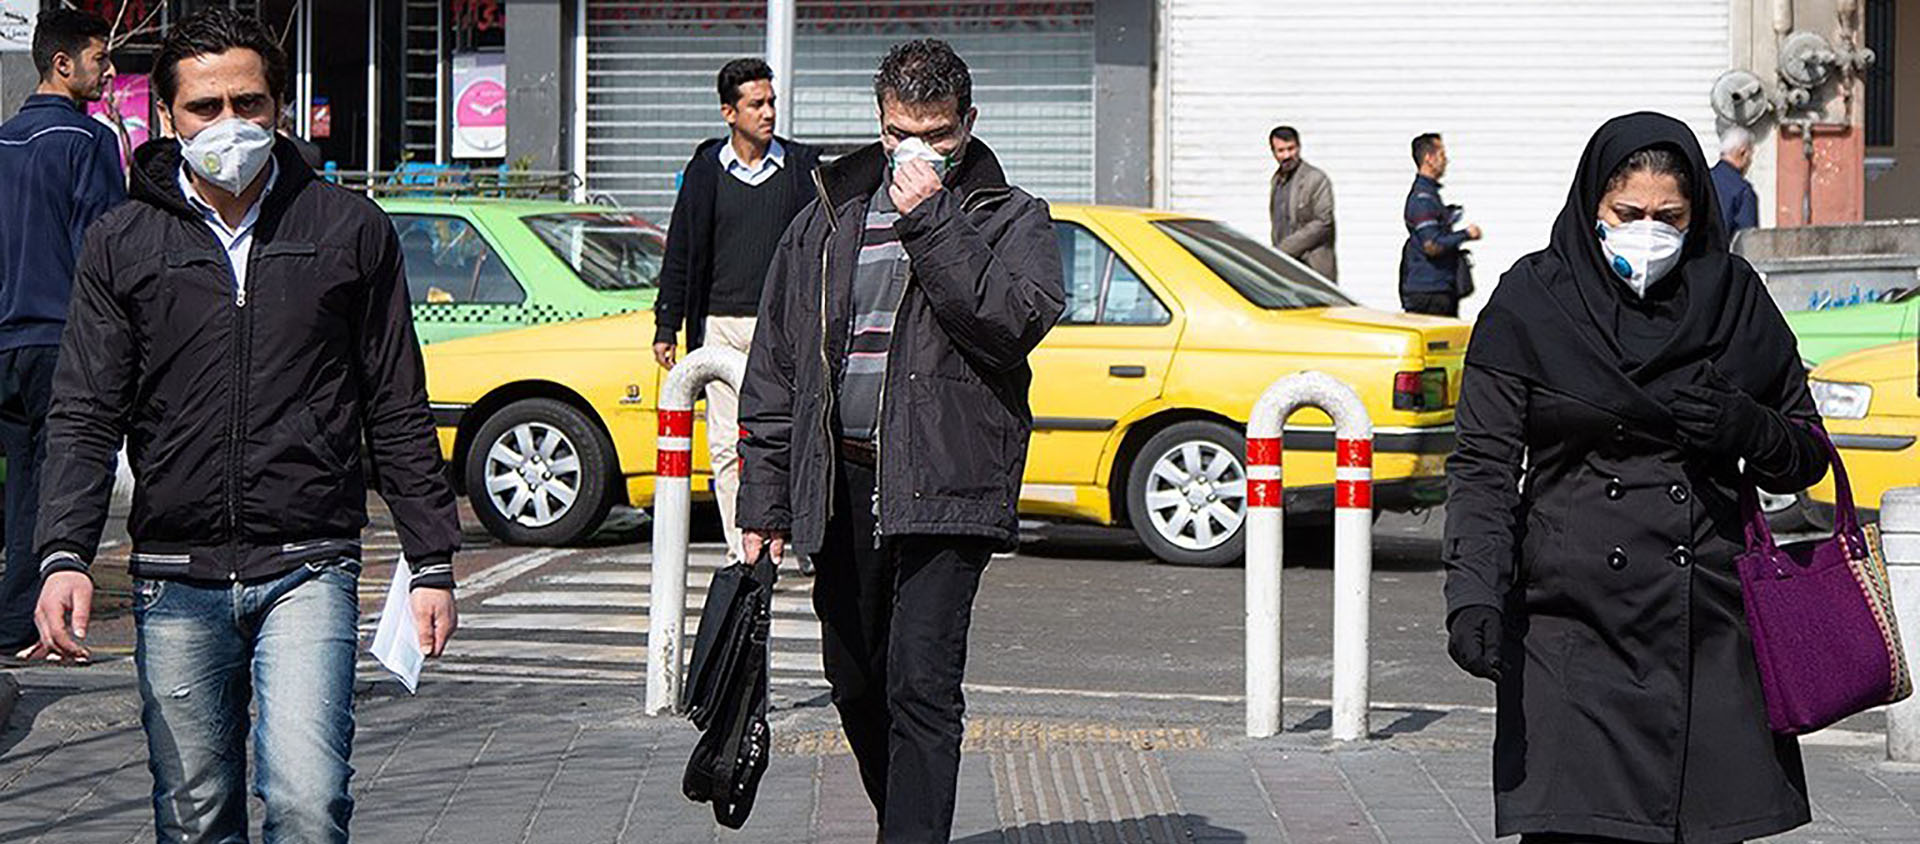 L'Iran est l'un des pays les plus touchés par le coronavirus | © farsnews.ir/Wikimedia Commons/CC BY 4.0